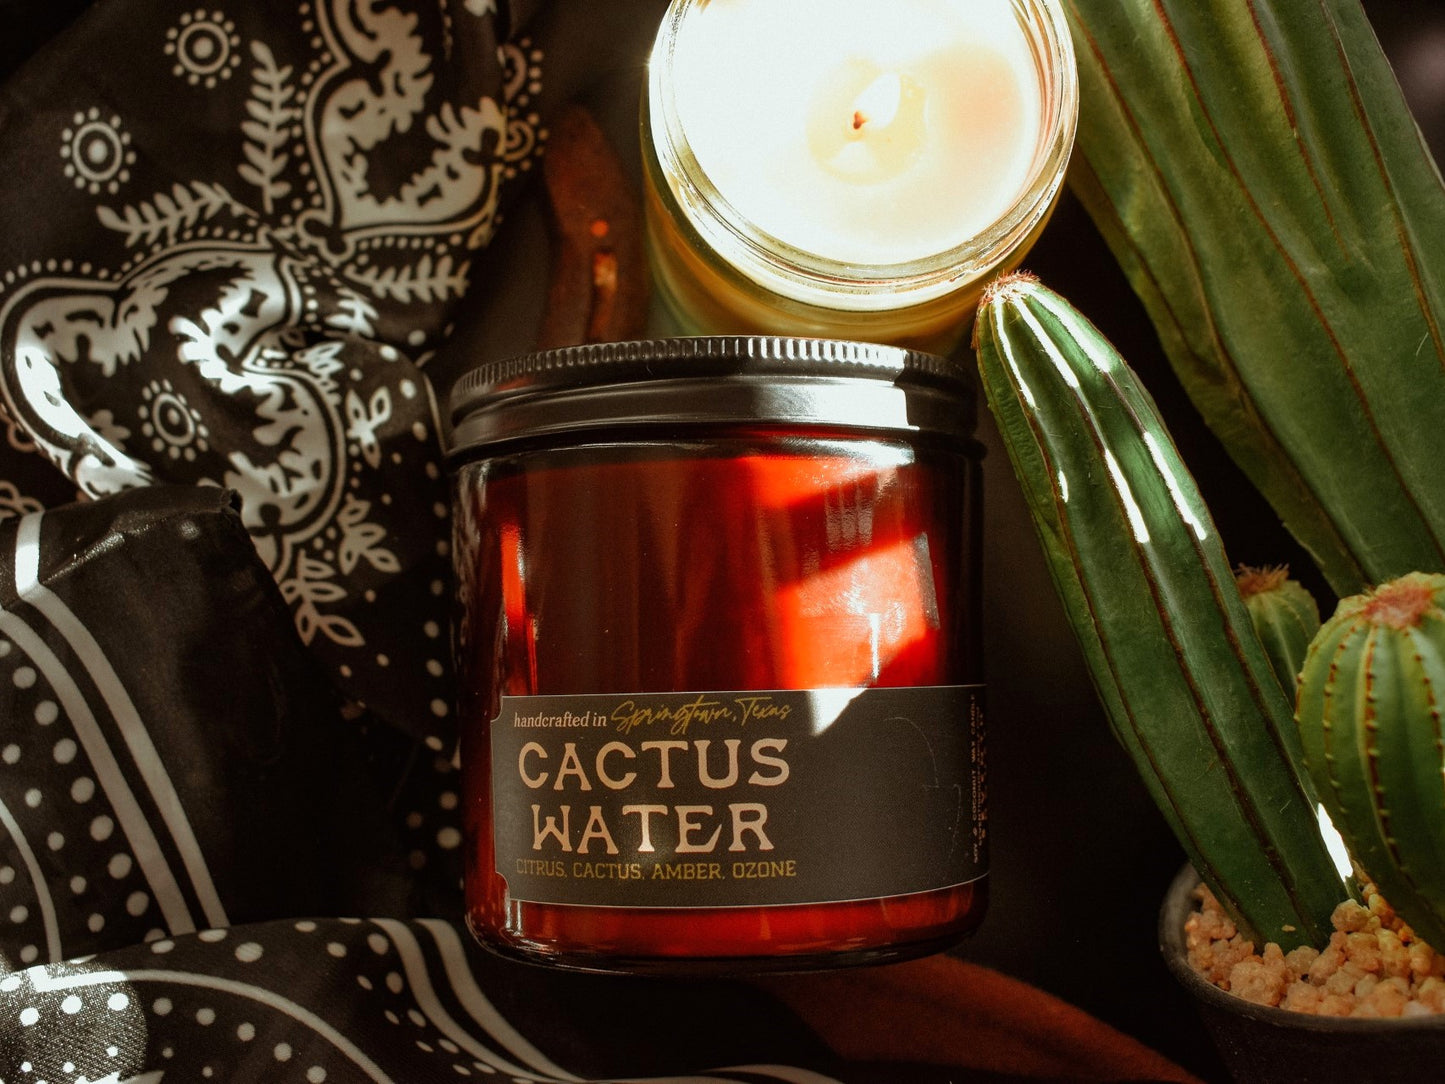 CACTUS WATER - Citrus, Cactus, Amber, Ozone